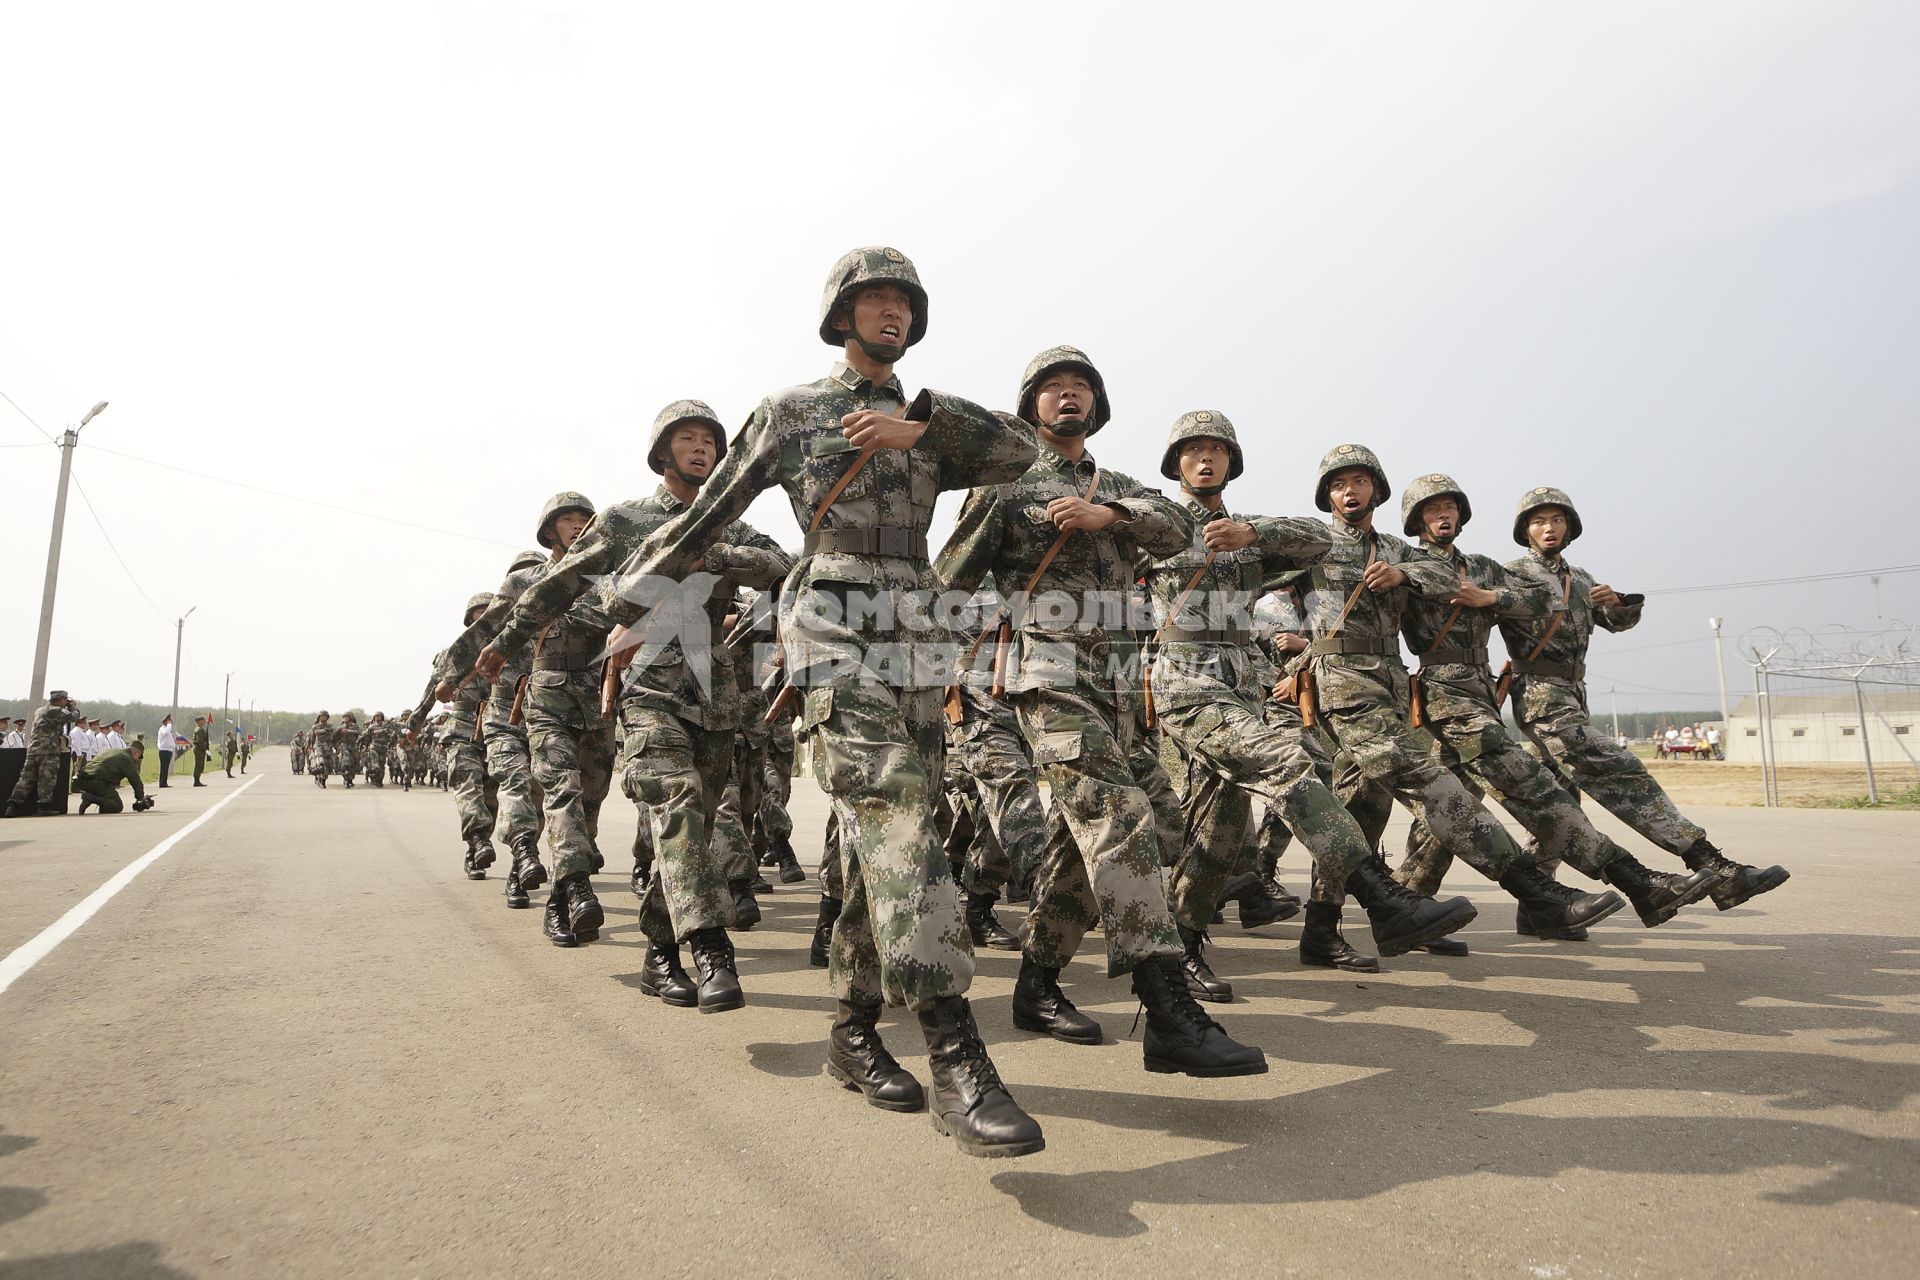 колонна китайских солдат проходит маршем  во время проведения Российско-Китайских учений Мирная миссия 2013 на полигоне в Чебаркуле